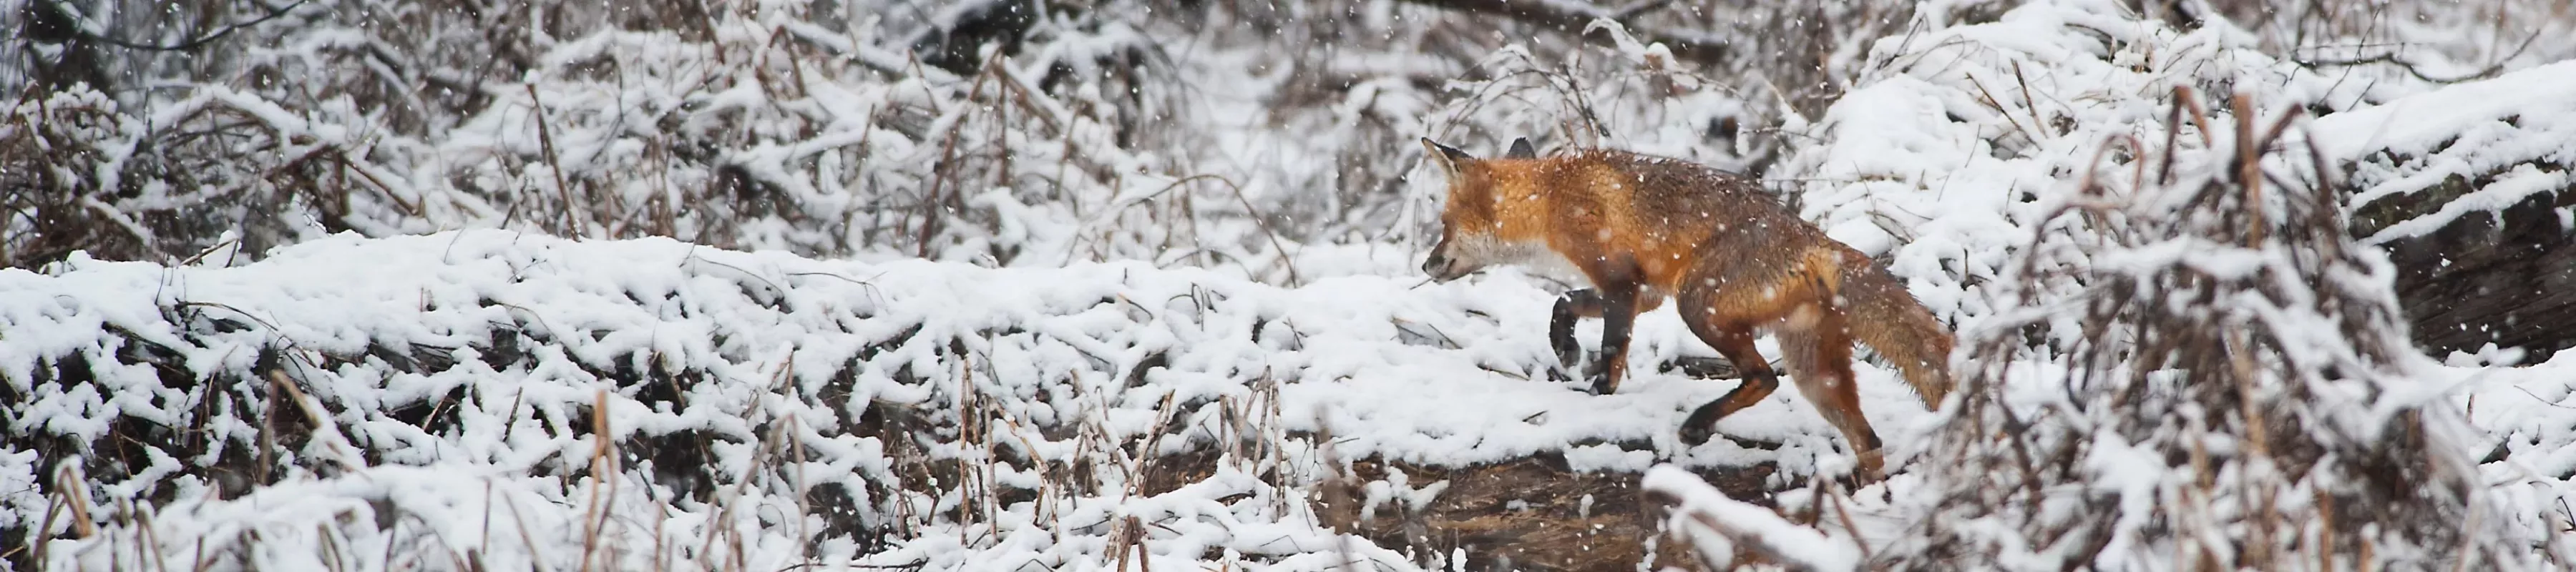 Red fox (Vulpes vulpes) in snow